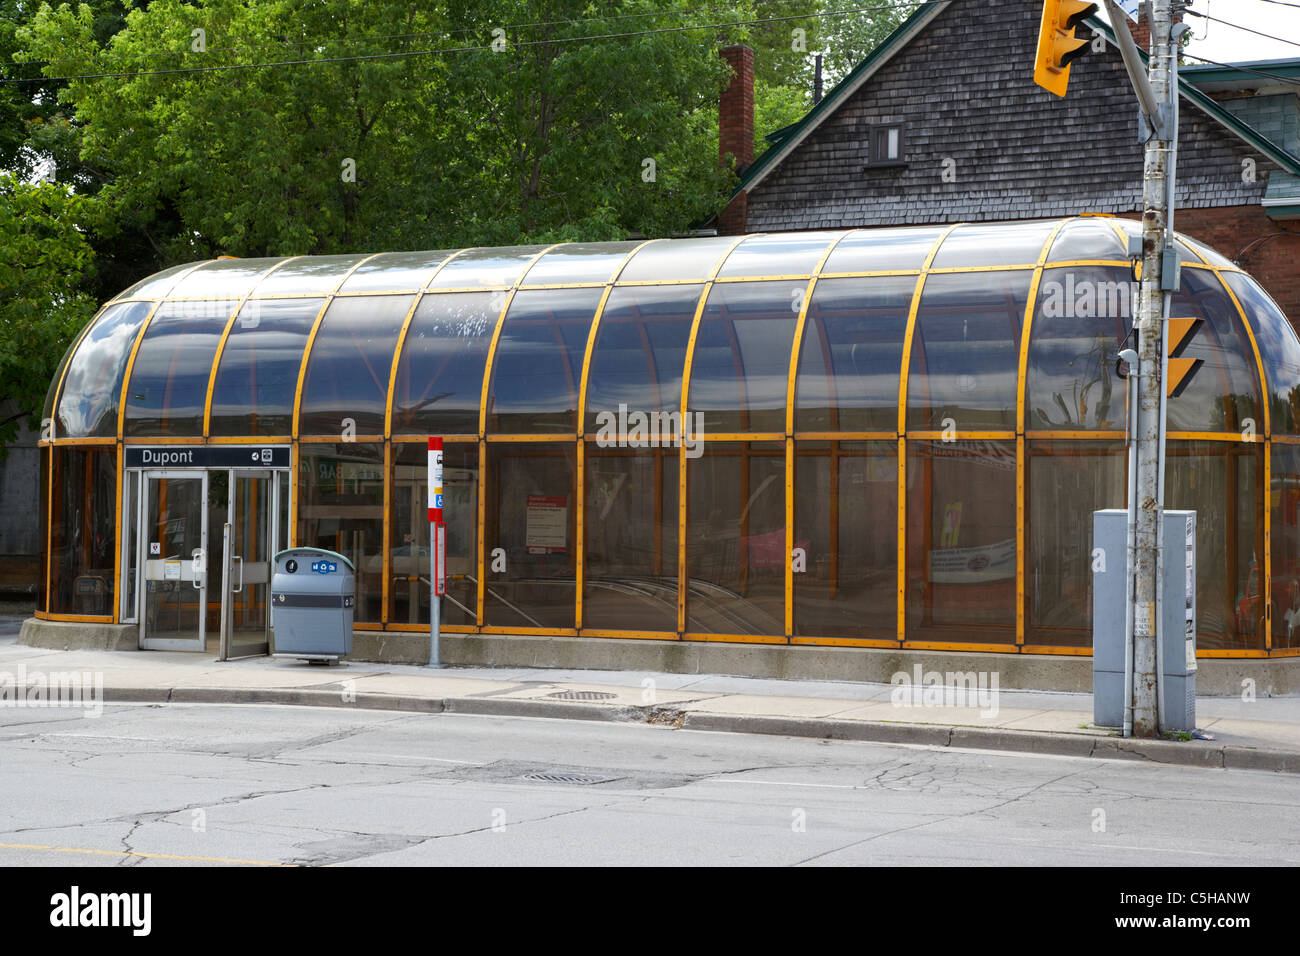 La estación de metro Dupont ttc cubierto entrada Toronto Ontario Canada Foto de stock